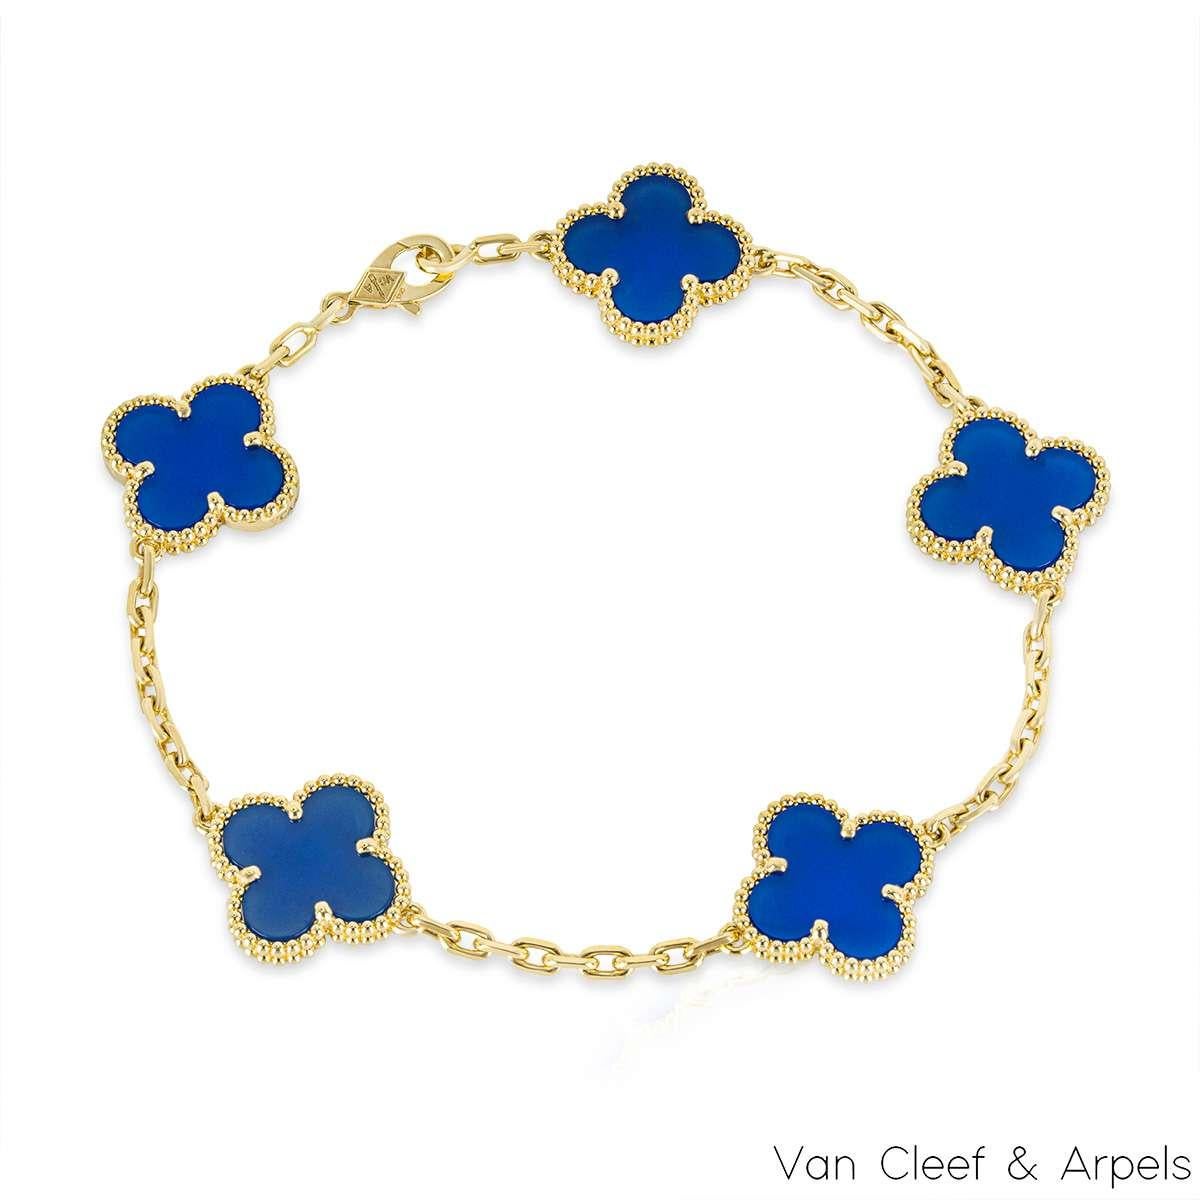 Ein wunderschönes Armband aus blauem Achat in 18 Karat Gelbgold aus der Kollektion Vintage Alhambra von Van Cleef und Arpels. Das Armband besteht aus 5 ikonischen Kleemotiven, die jeweils mit einer Perlenkante und einer Einlage aus blauem Achat